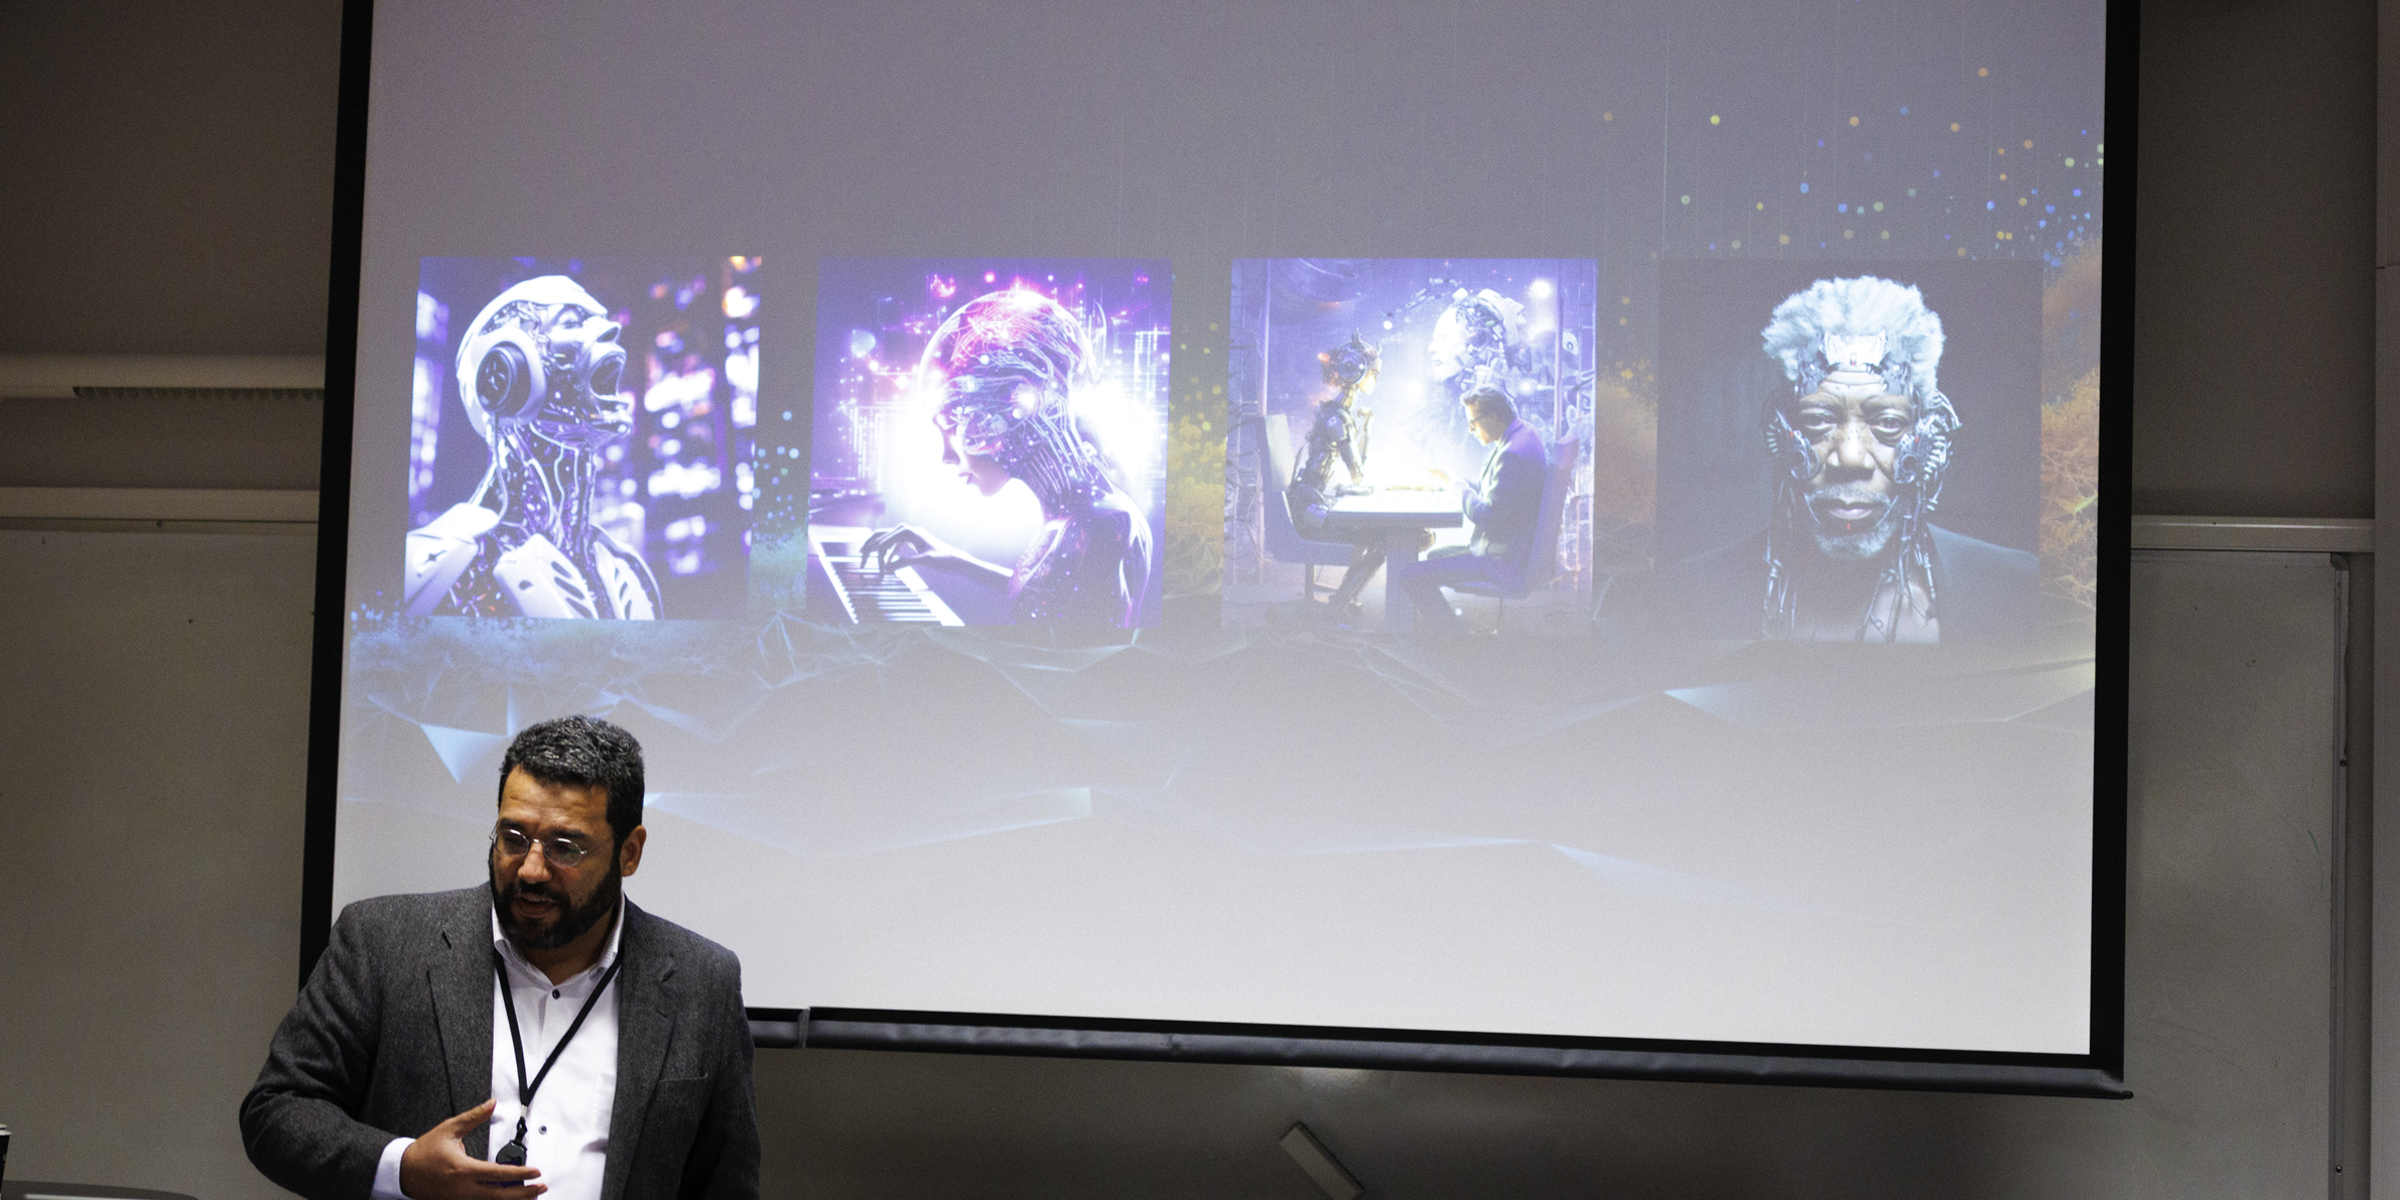 Gustavo Mello foran et lerret med bilder av roboter.